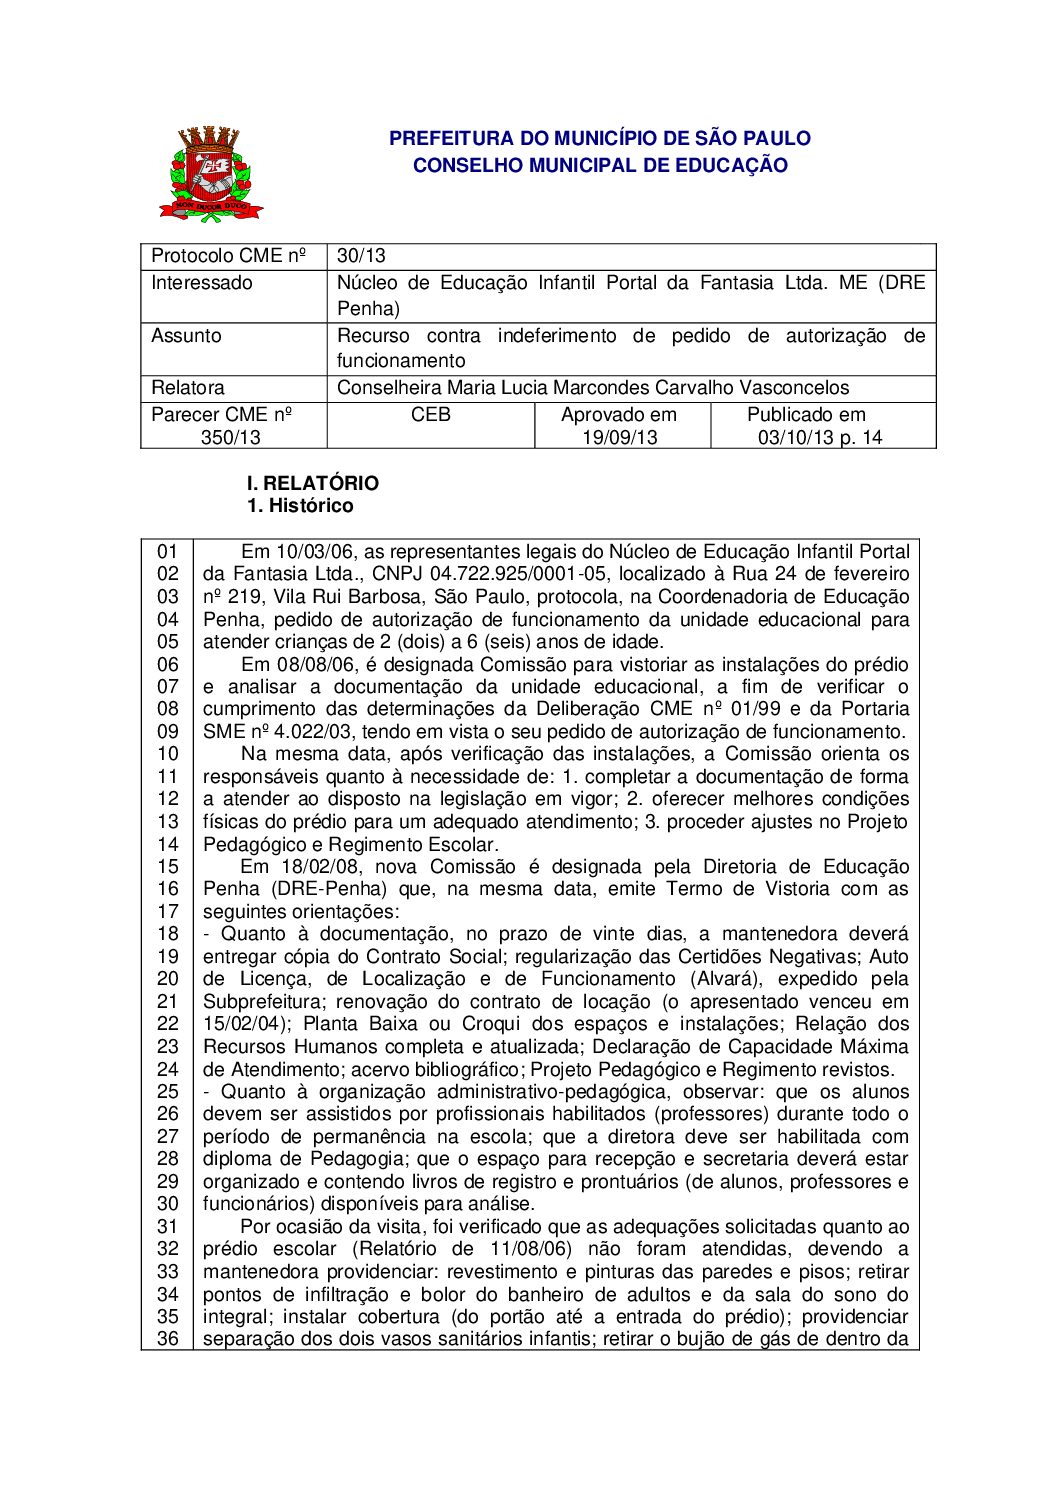 Parecer CME nº 350/2013 - Núcleo de Educação Infantil Portal da Fantasia Ltda ME (DRE Penha) - Recurso contra indeferimento de pedido de autorização de funcionamento 